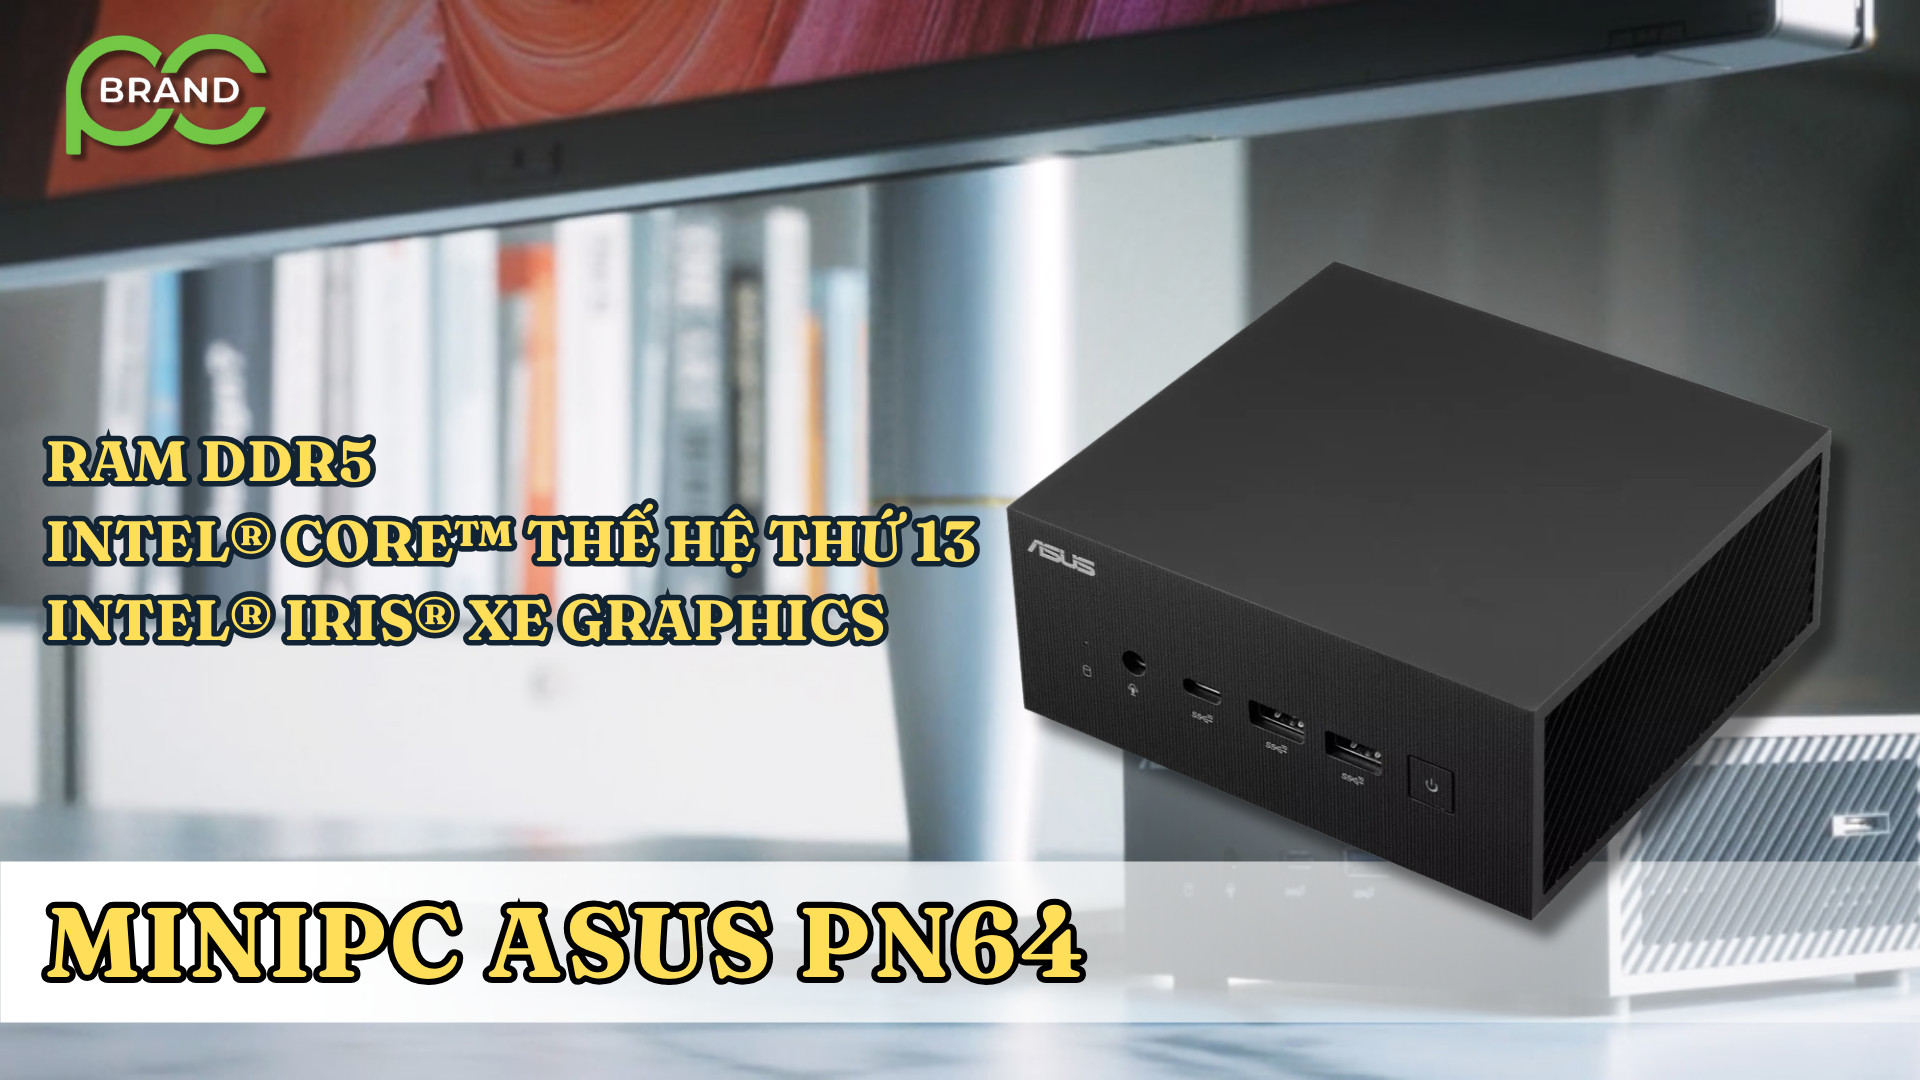 🔥 ASUS PN64 - Một trong những máy tính Mini PC đáng chú ý nhất trên thị trường.